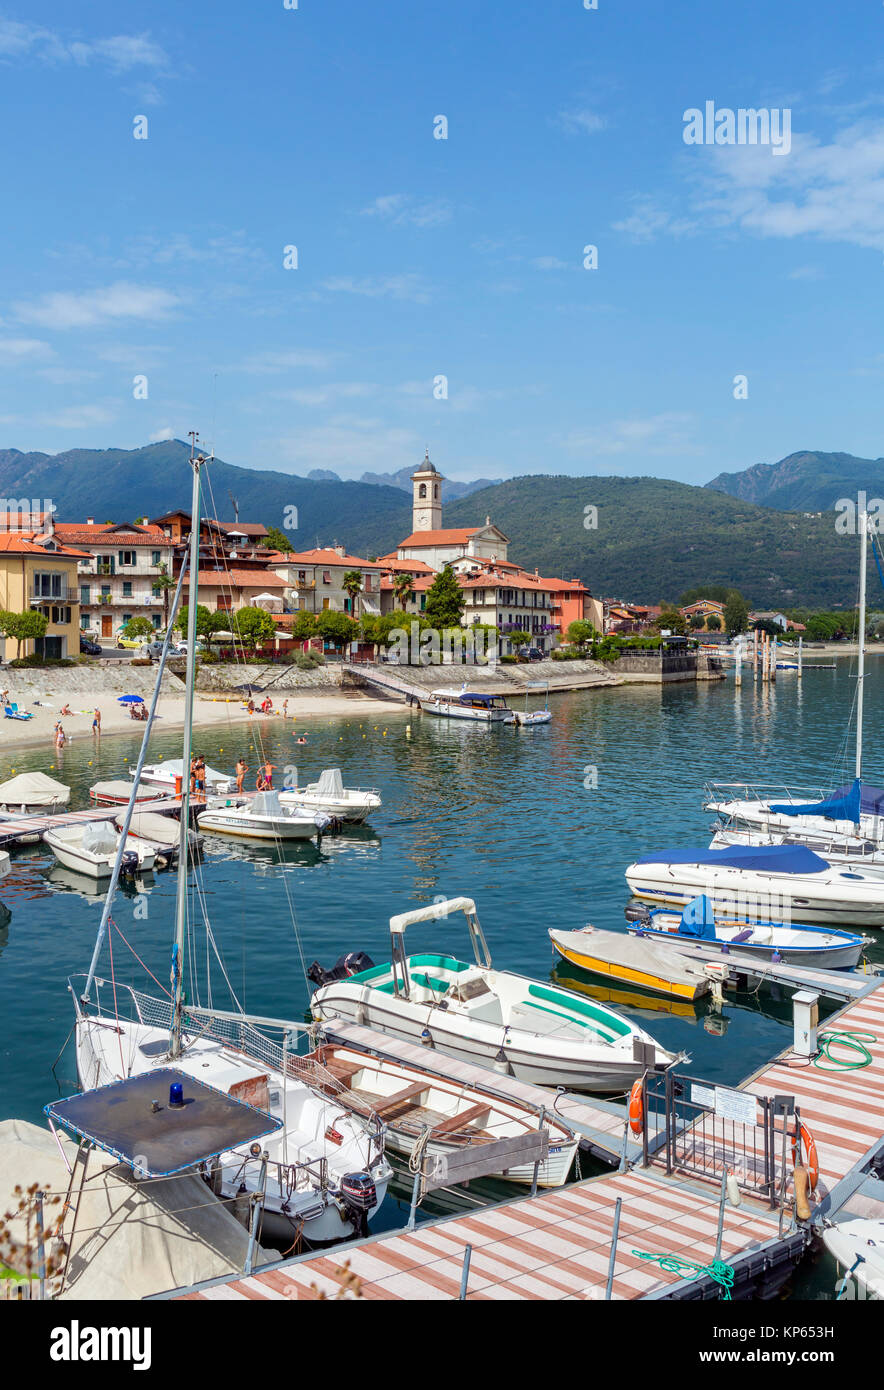 Porto di Feriolo, Lago Maggiore, laghi italiani, Piemonte, Italia Foto  stock - Alamy